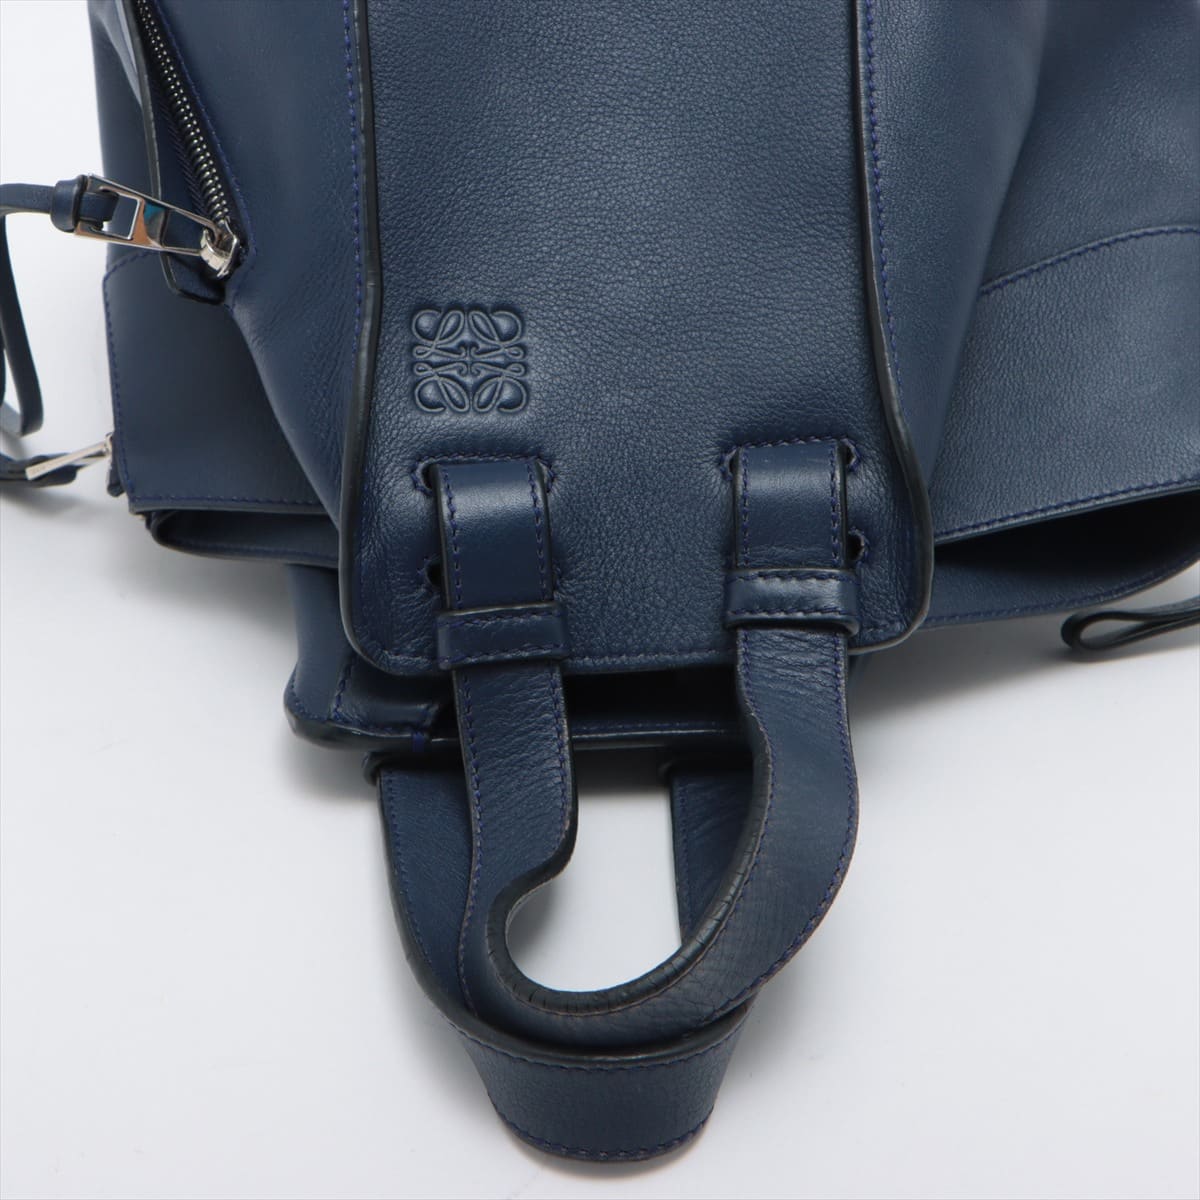 Loewe Hammock small Leather 2way handbag Navy blue